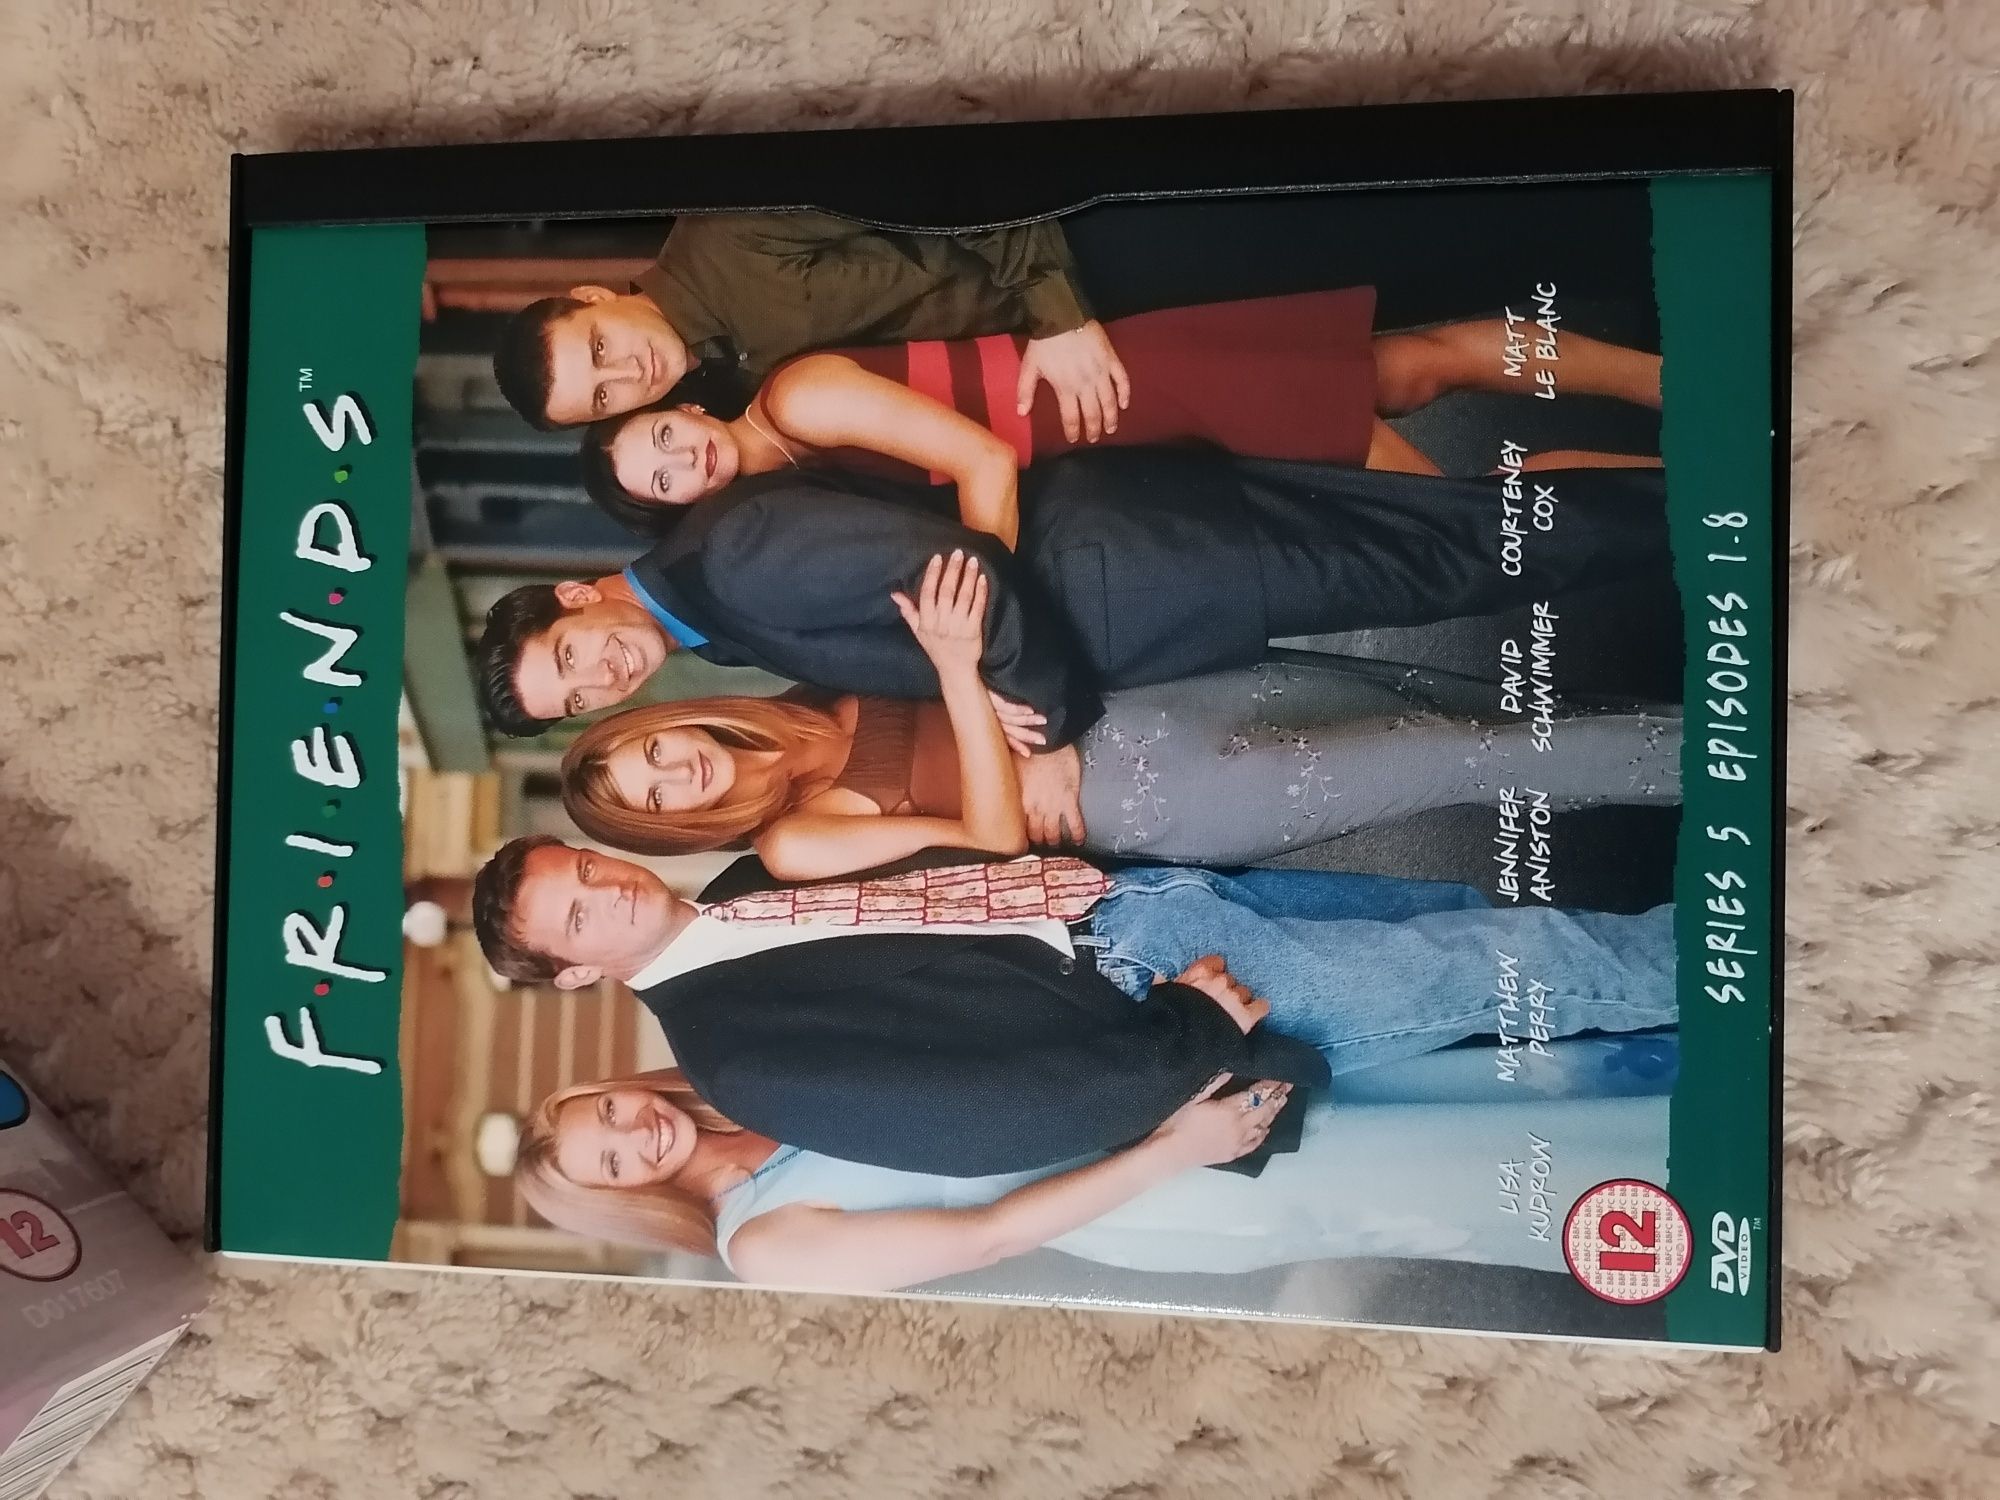 Coleção DVDs série Friends